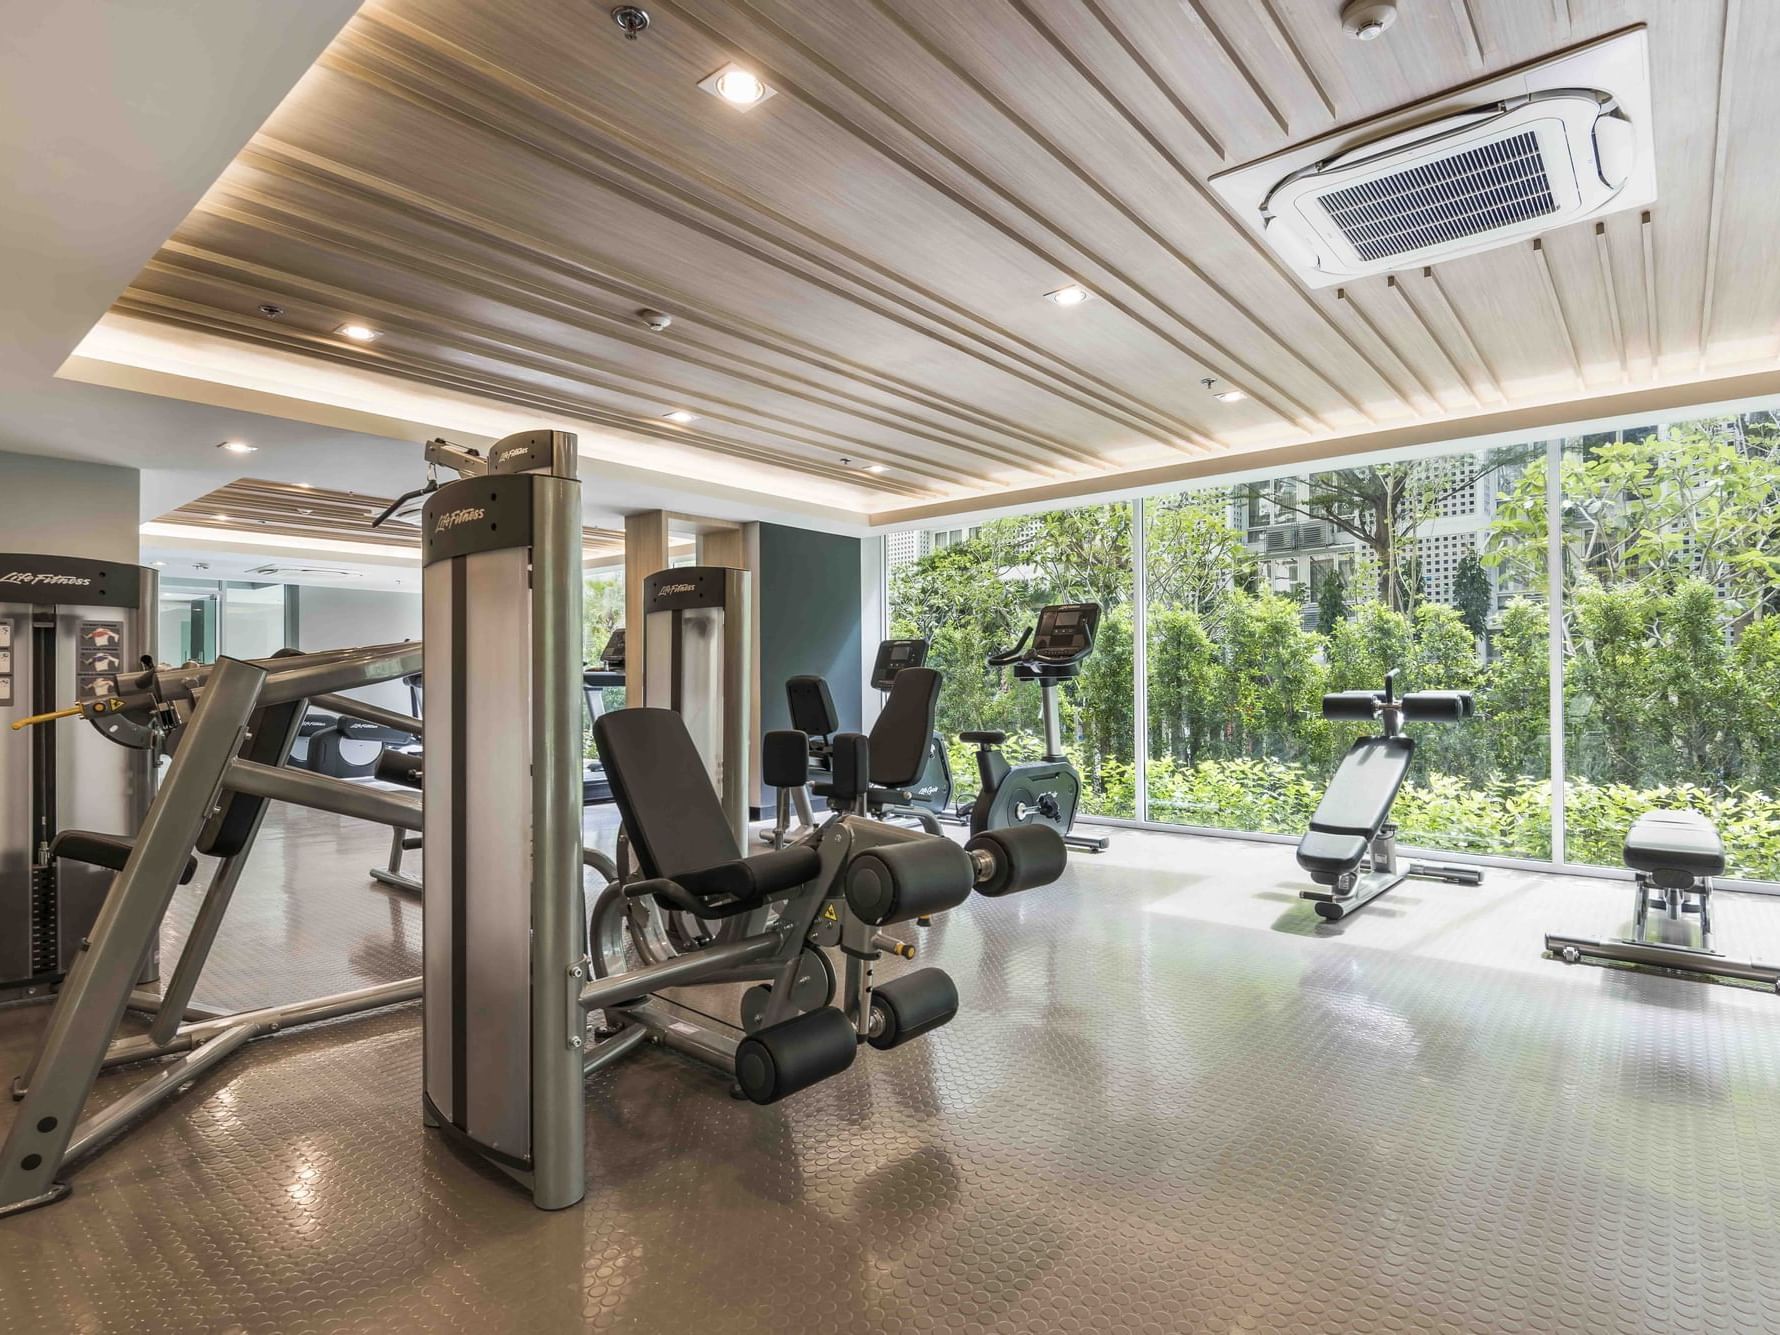 Interior of the Fitness center at Maitria Hotel Rama 9 Bangkok